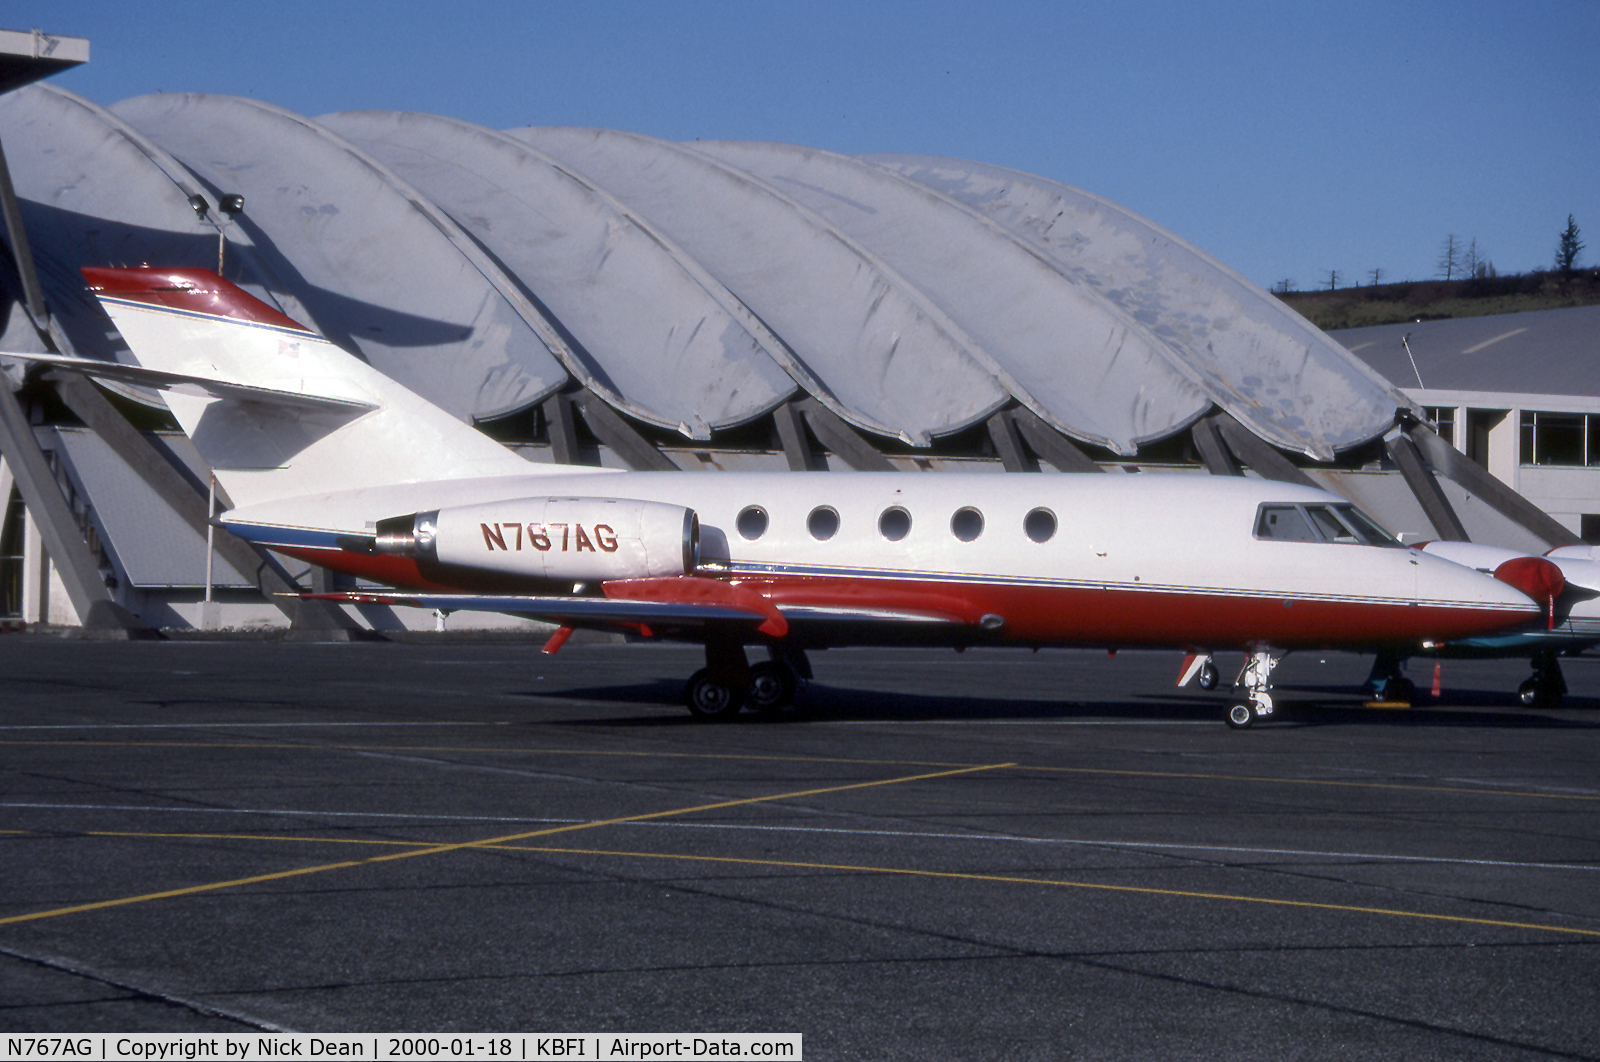 N767AG, Dassault Falcon (Mystere) 20F C/N 349, KBFI